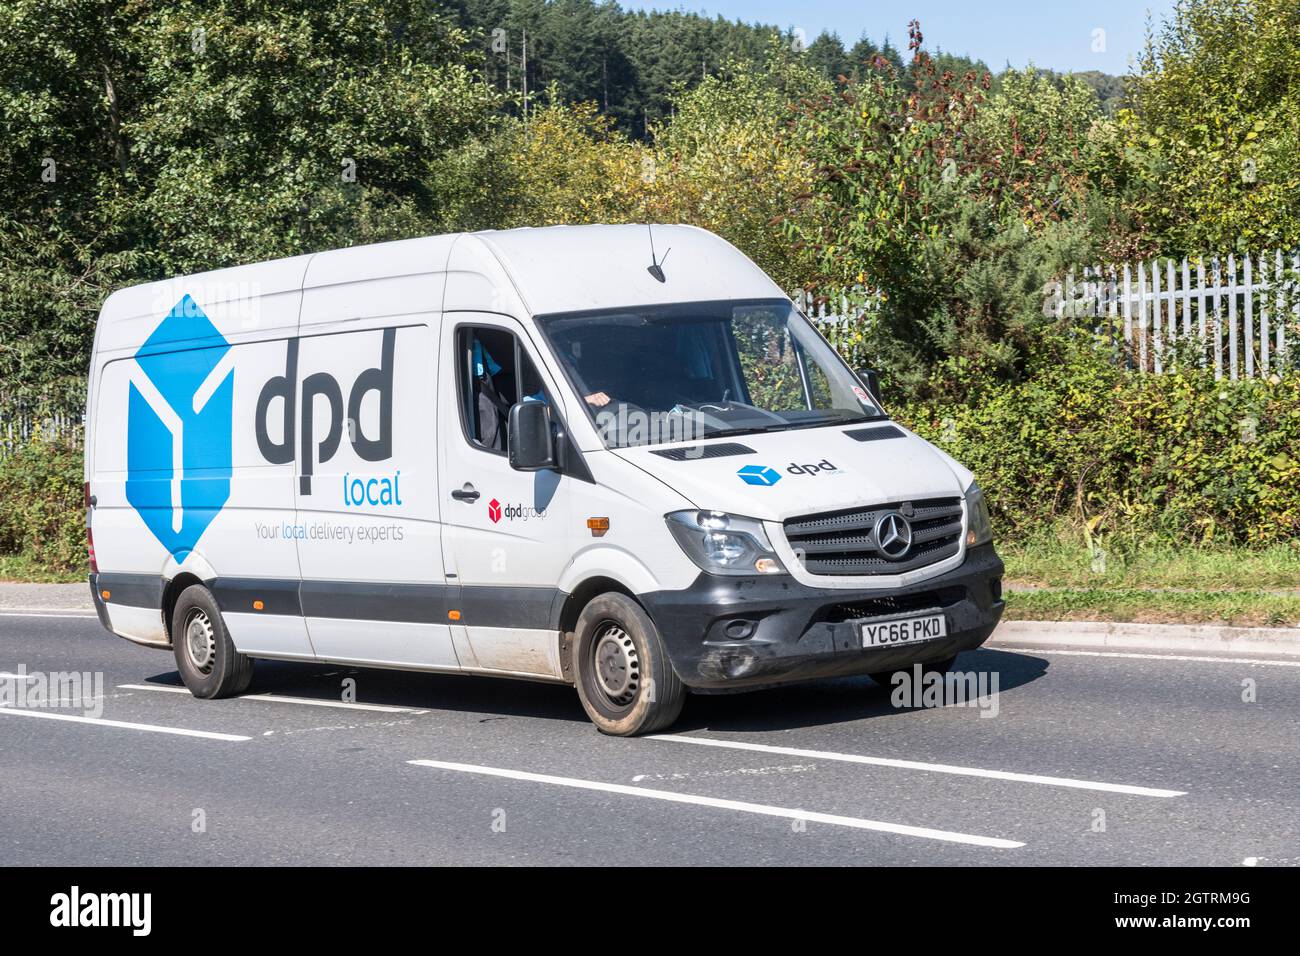 Weißer DPD lokaler Lieferwagen (Mercedes) fährt auf der Landstraße hinauf.  Für UK Fahrer Mangel, Paketlieferungen während Covid, UK Transport  Stockfotografie - Alamy